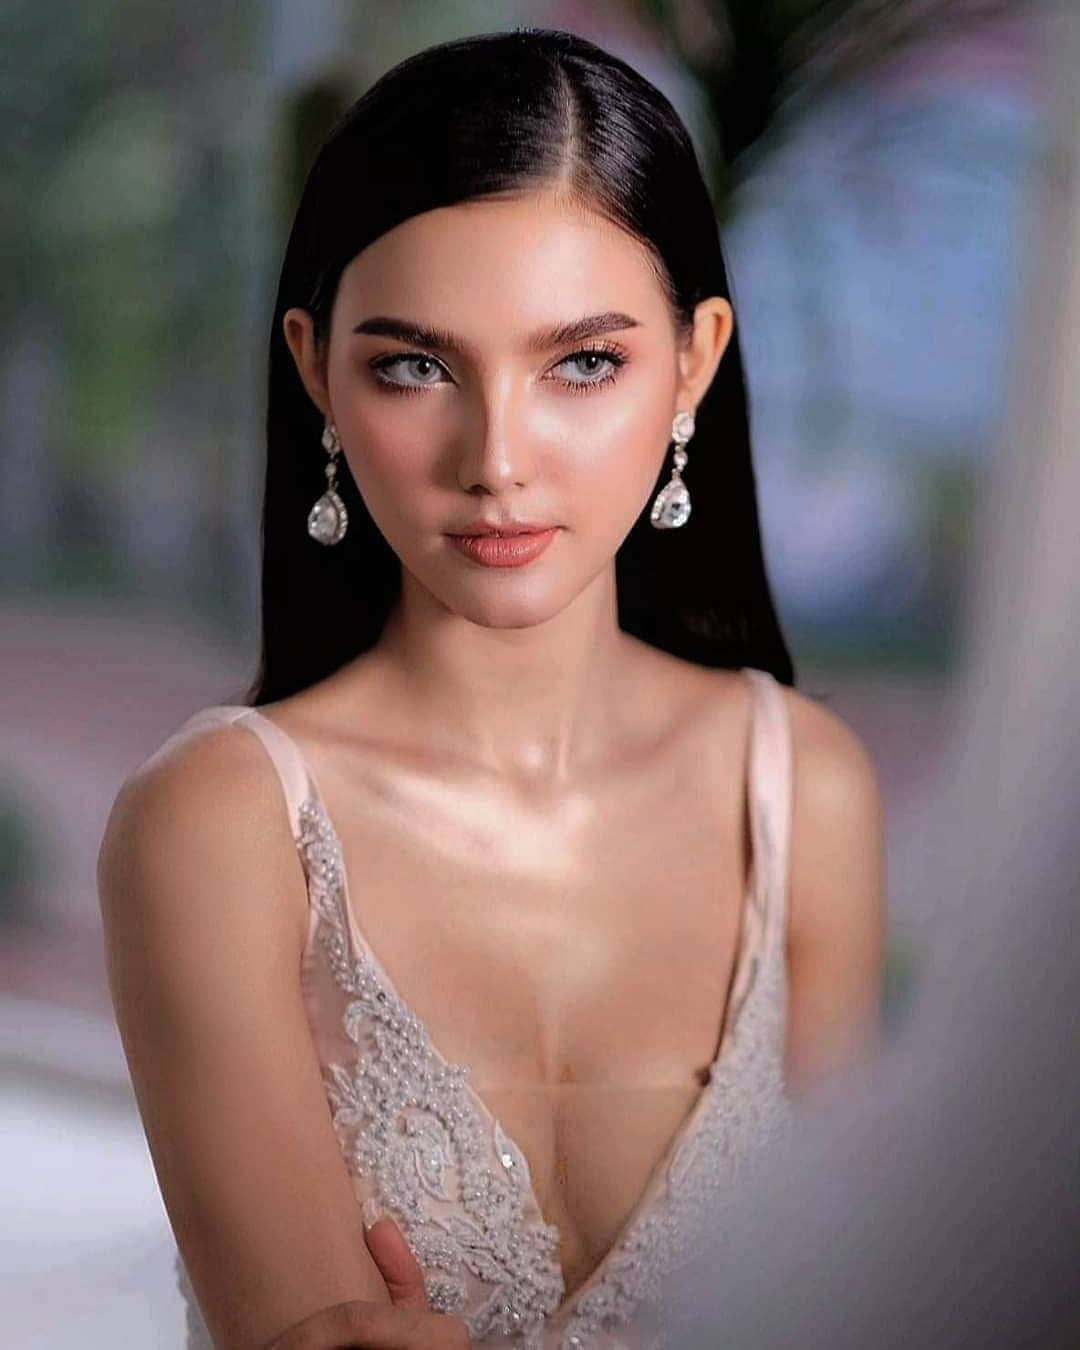 Chiêm ngưỡng vẻ đẹp lai đầy quyến rũ của Hoa hậu Lào đẹp nhất lịch sử - Ảnh 5.